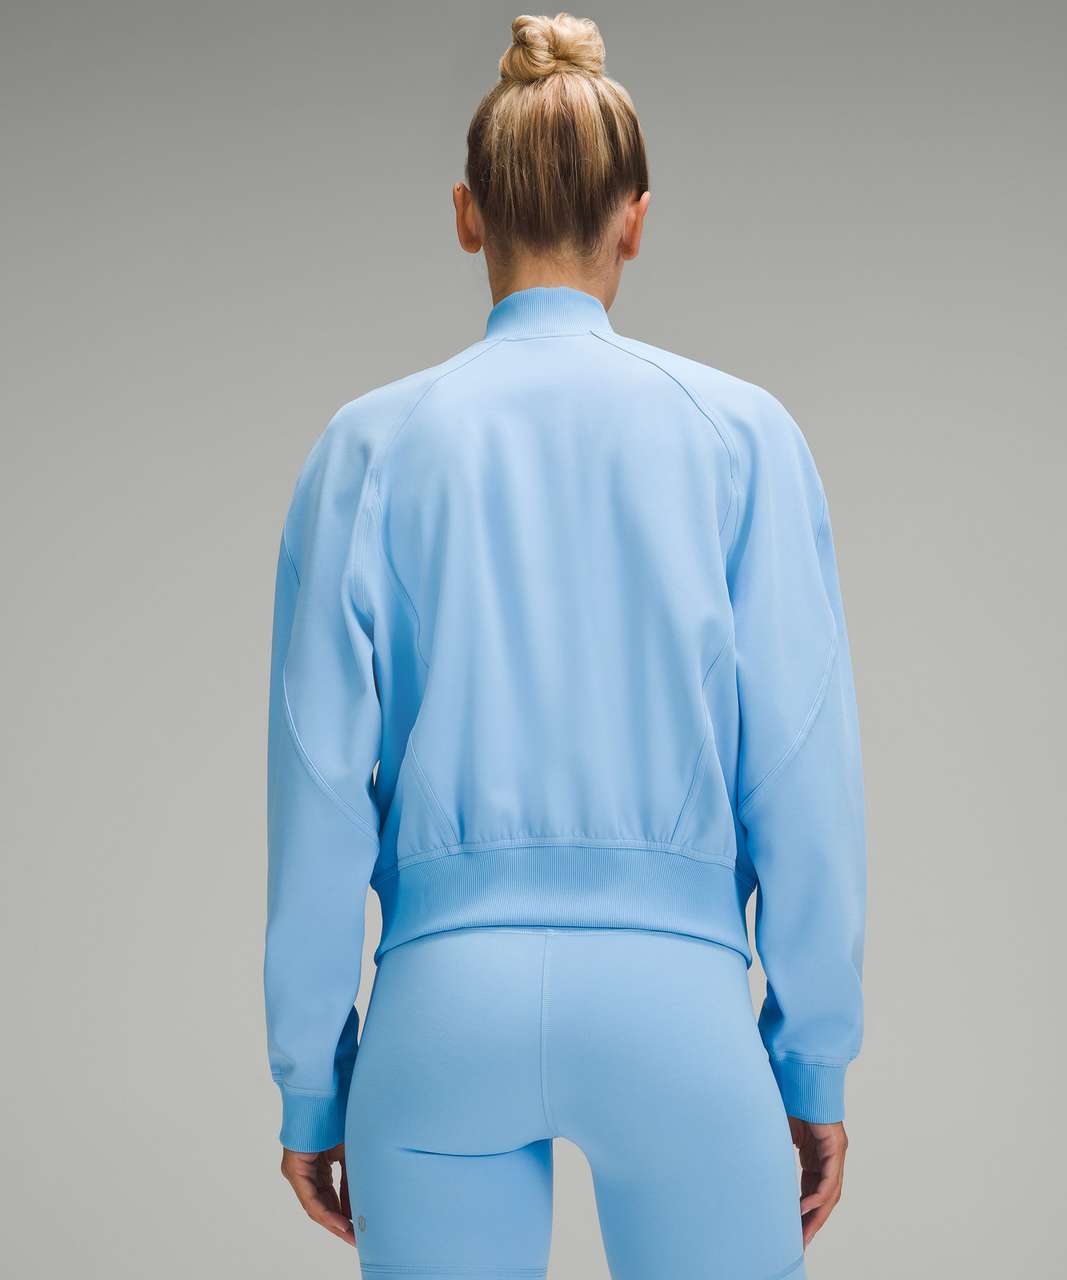 Lululemon Athletica Solid Blue Track Jacket Size 6 - 49% off